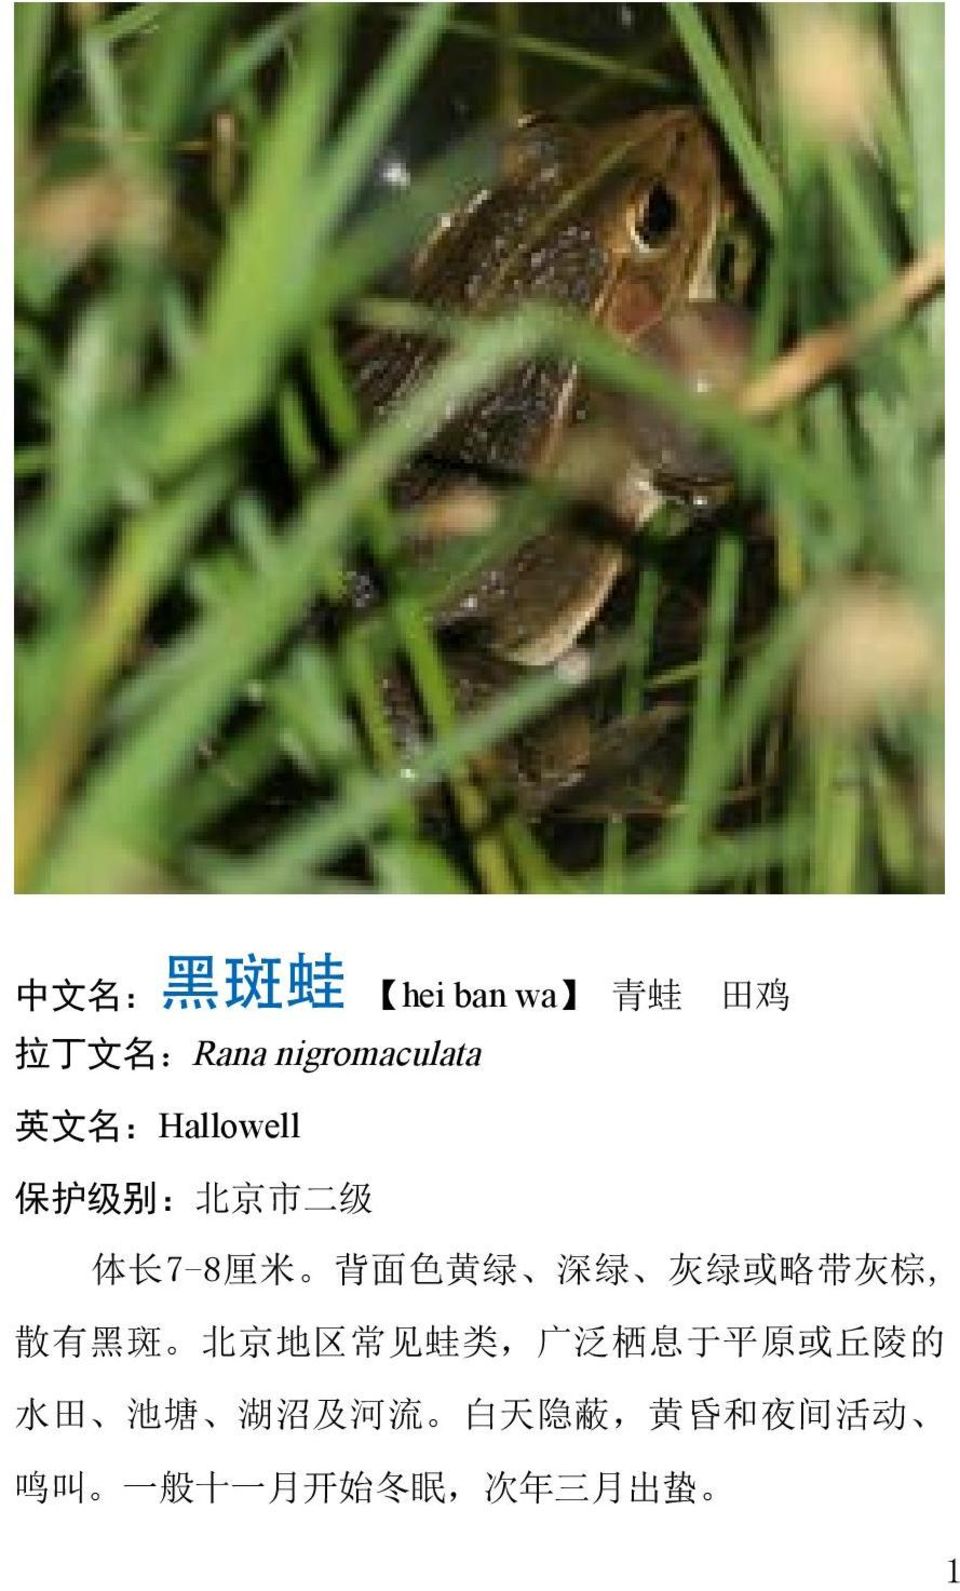 略 带 灰 棕, 散 有 黑 斑 北 京 地 区 常 见 蛙 类, 广 泛 栖 息 于 平 原 或 丘 陵 的 水 田 池 塘 湖